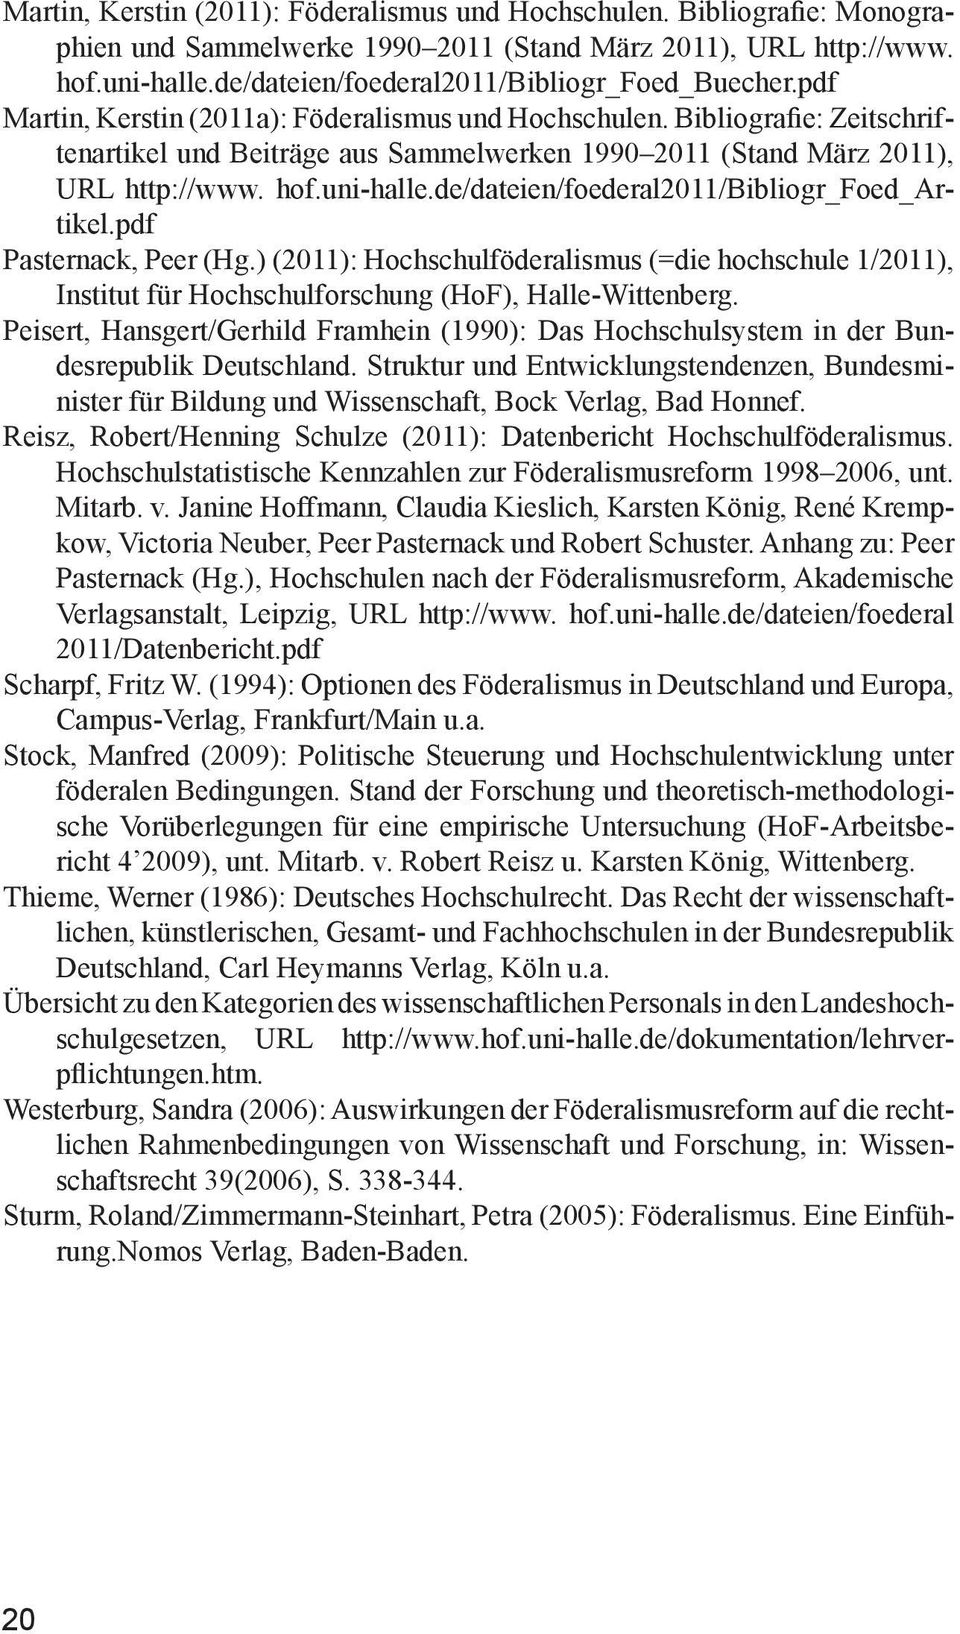 Bibliografie: Zeitschriftenartikel und Beiträge aus Sammelwerken 1990 2011 (Stand März 2011), URL http://www. hof. uni-halle.de/da teien/foederal2011/bibliogr_foed_artikel.pdf Pasternack, Peer (Hg.